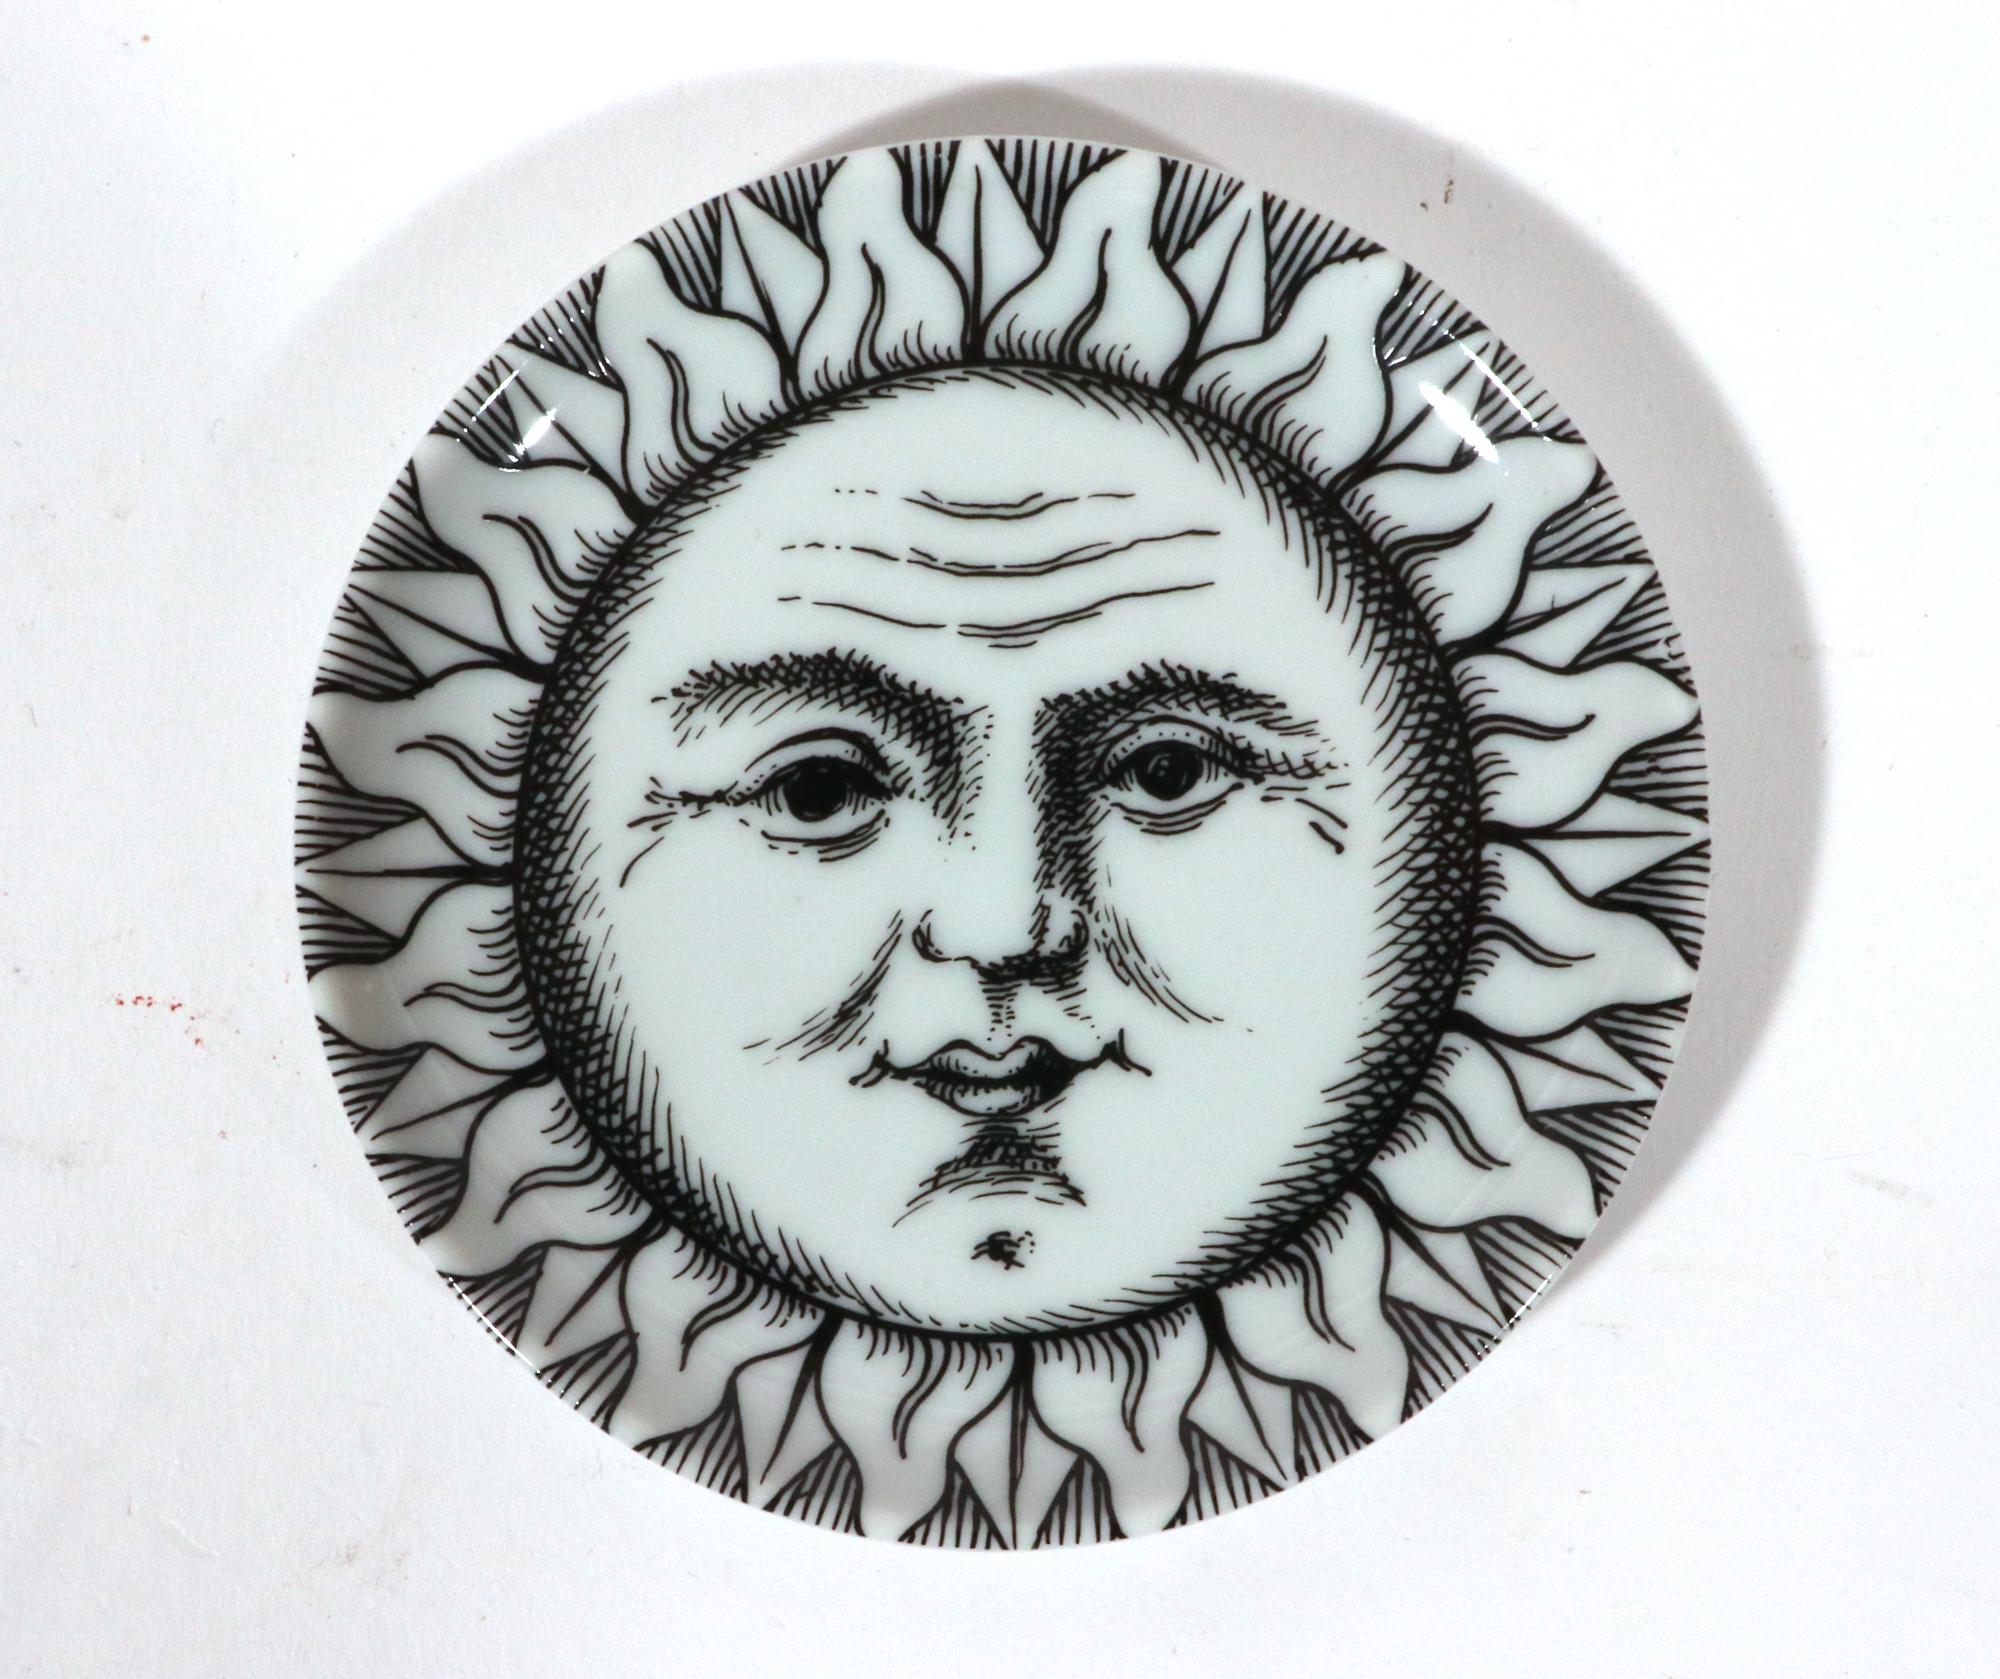 20th Century Soli E Lune Sun and Moon Pattern Ceramic Coasters by  Piero Fornasetti For Sale